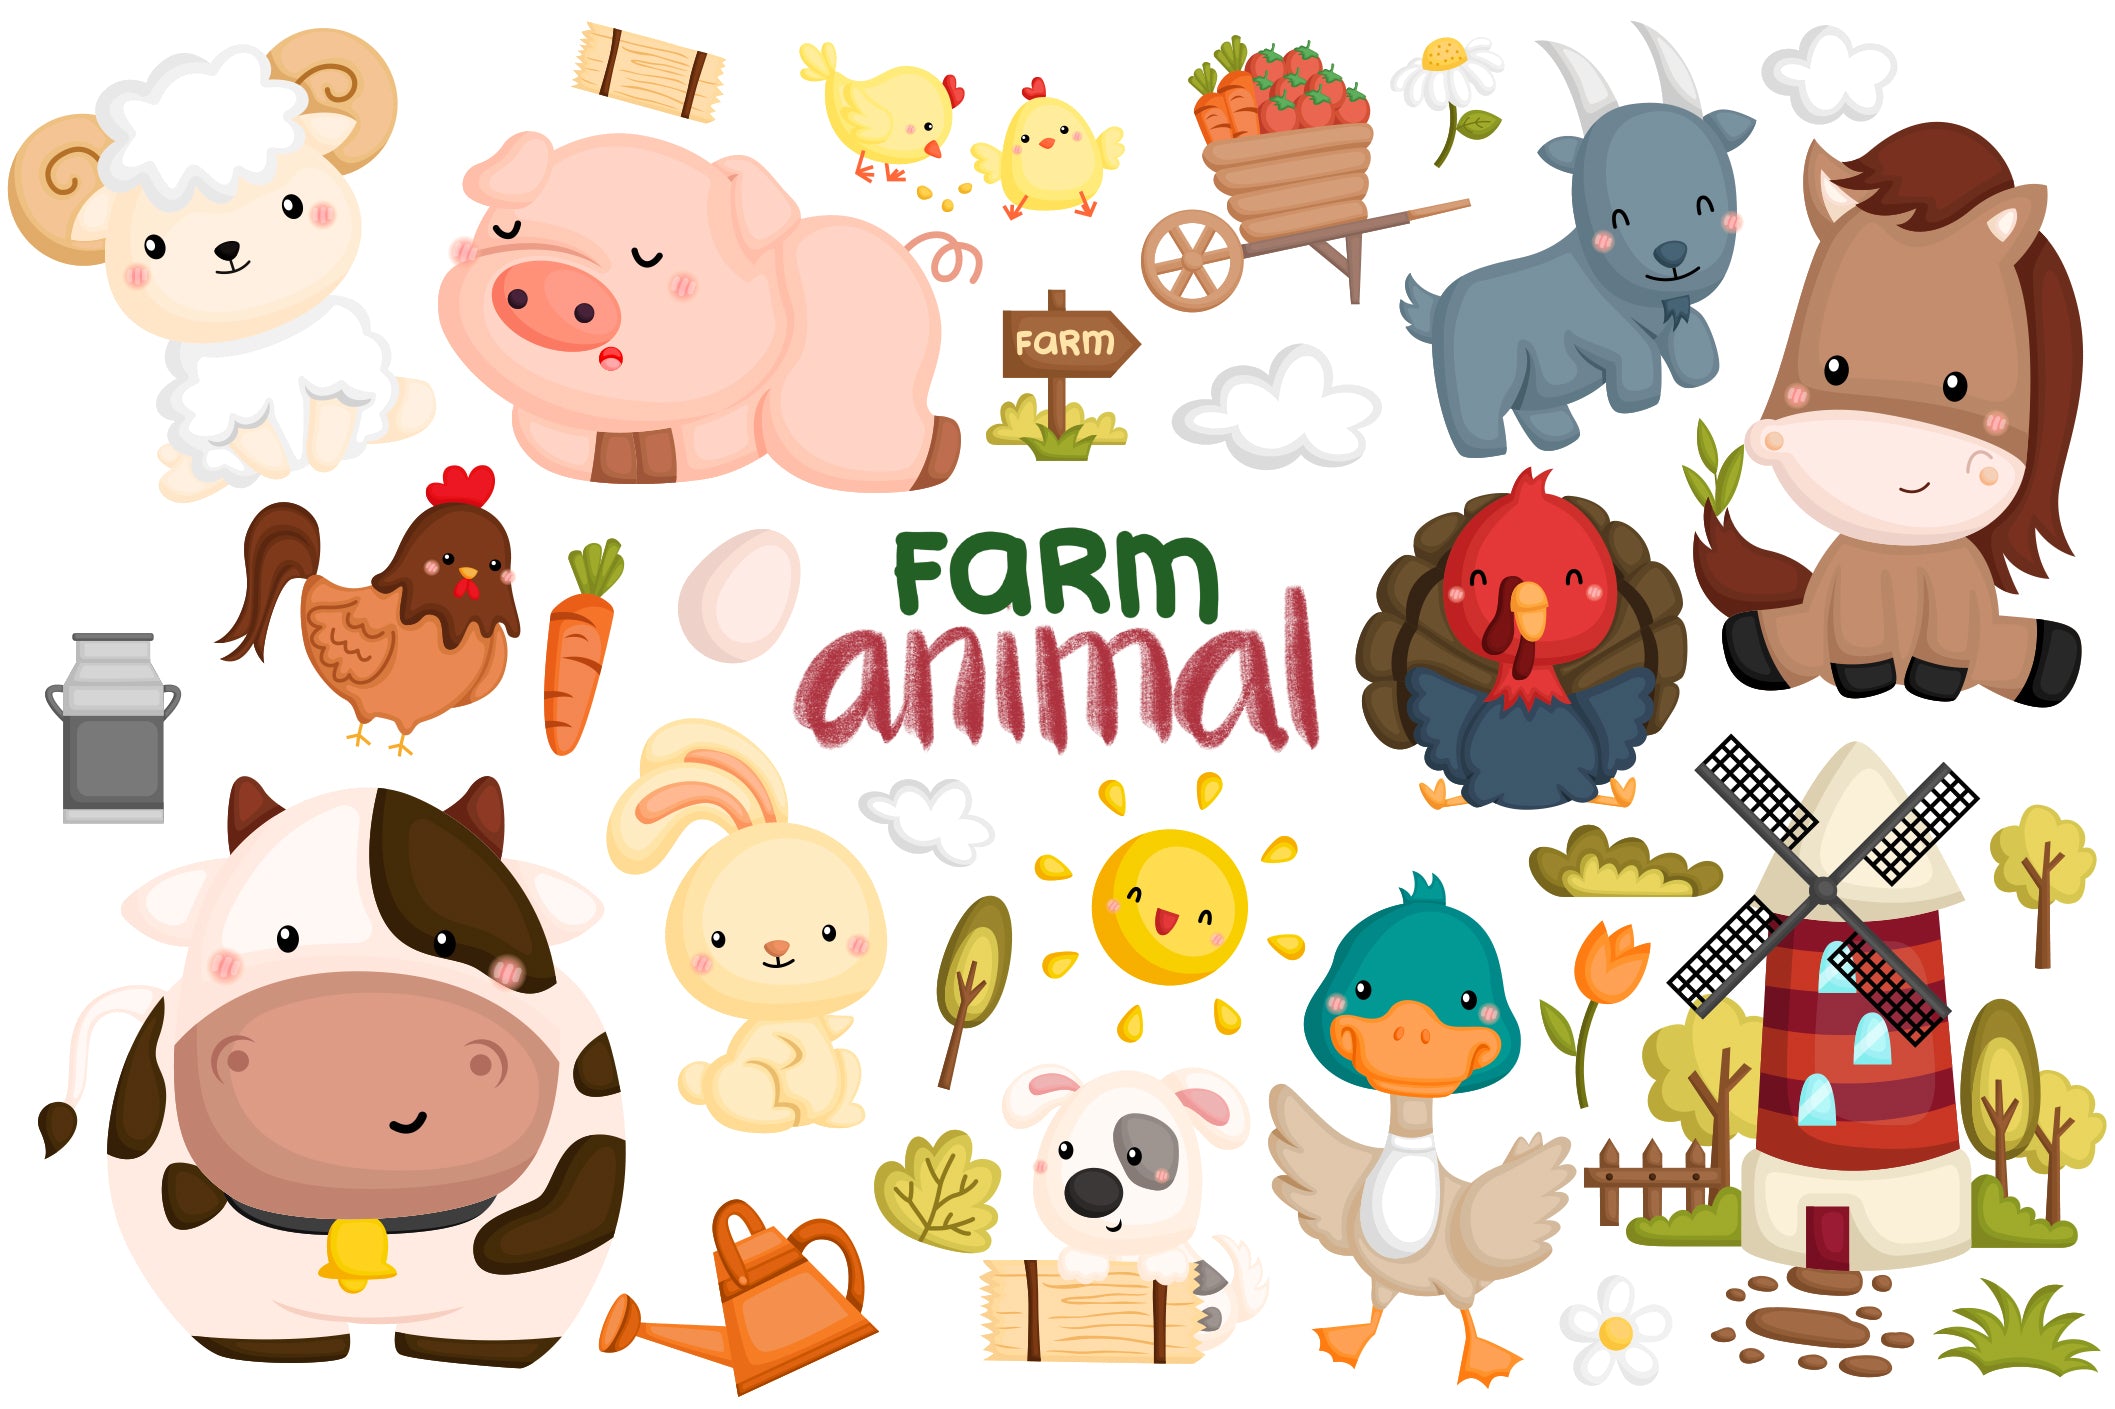 farm animal clipart